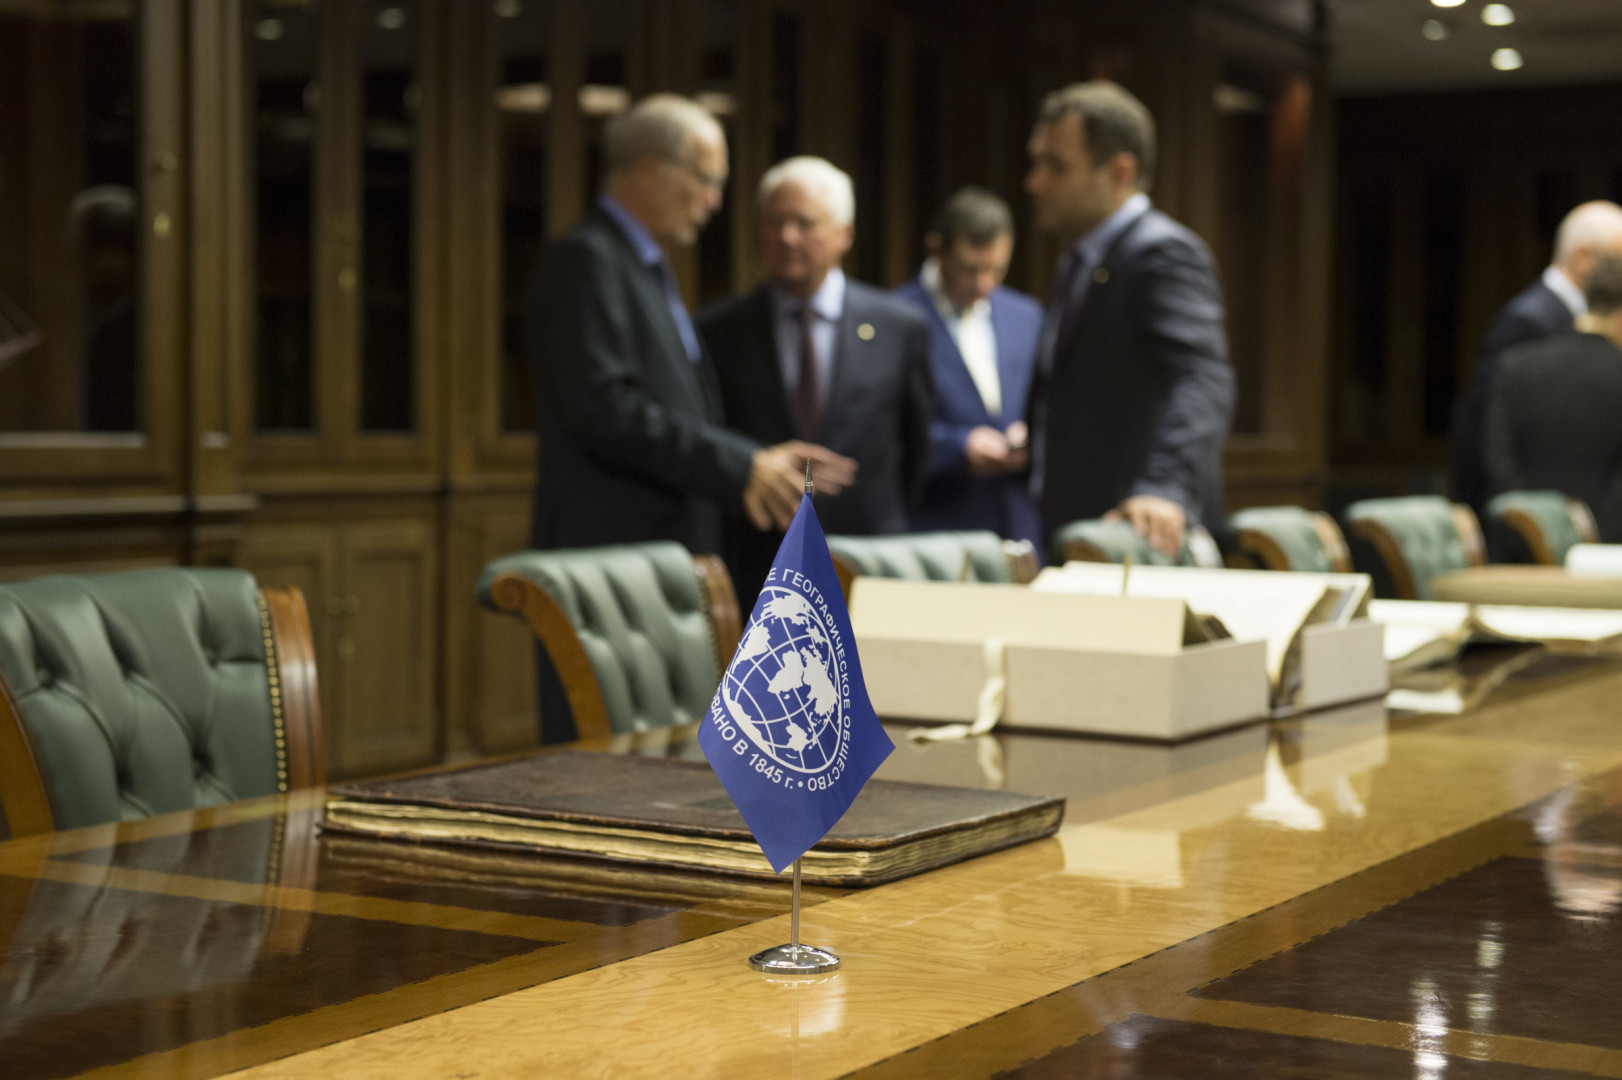 Церемония подписания соглашения между Русским географическим обществом и Фондом Князя Монако Альбера II